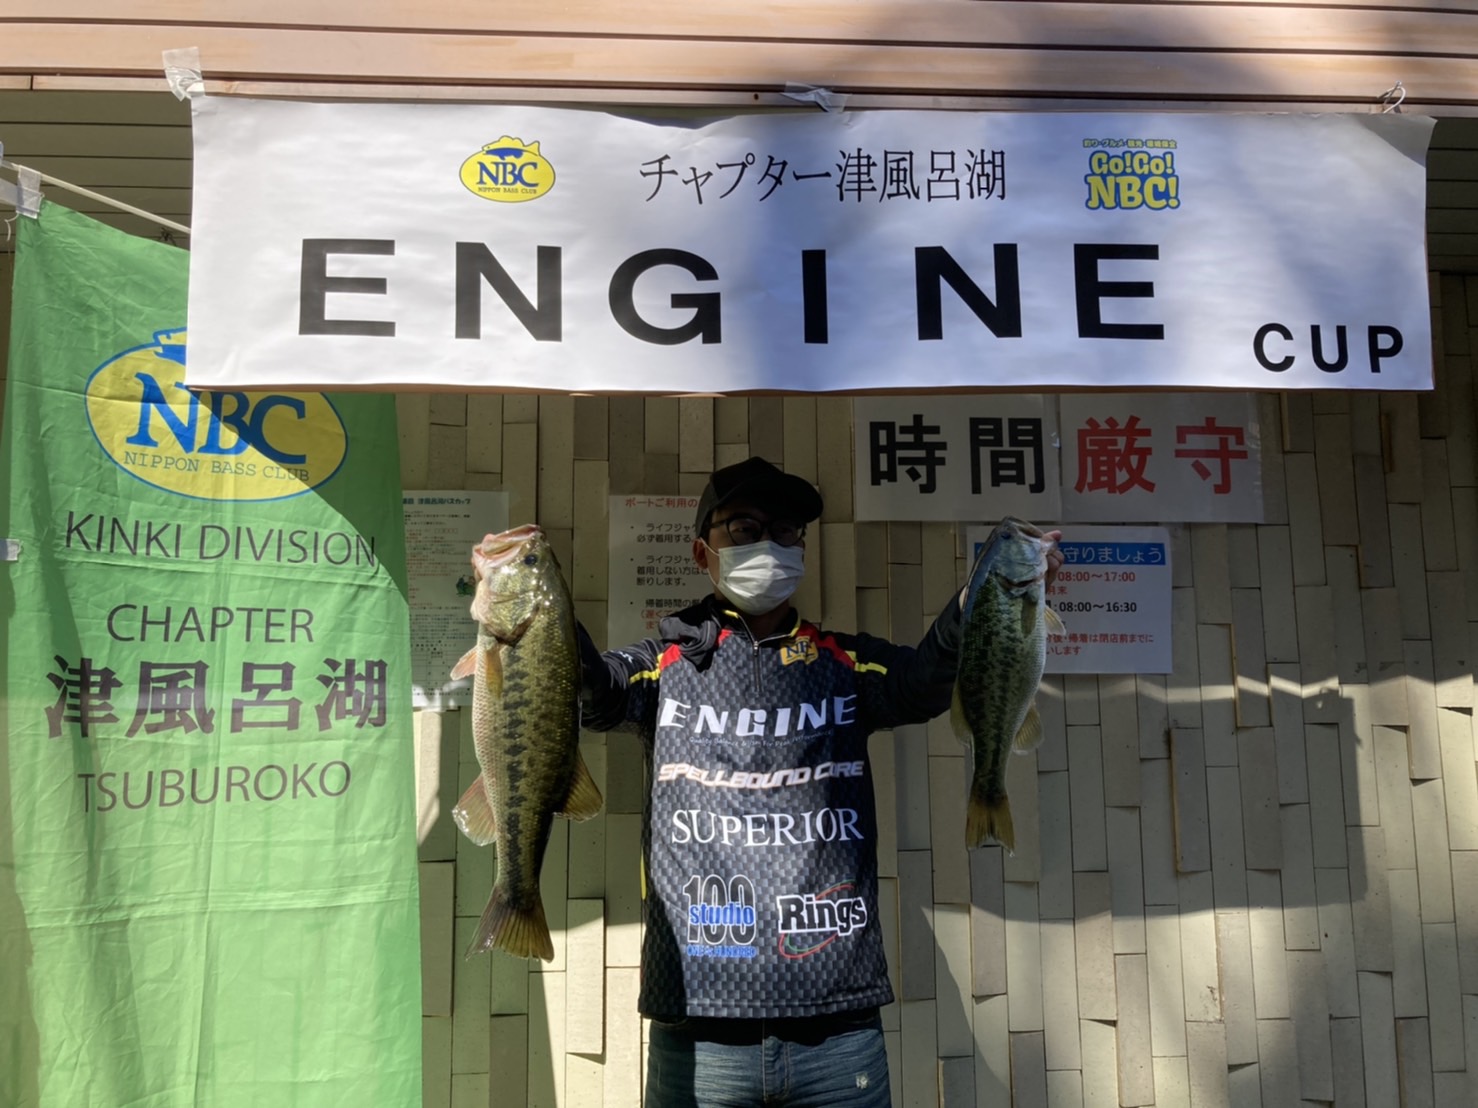 チャプター津風呂湖 第６戦　ENGINE　CUP